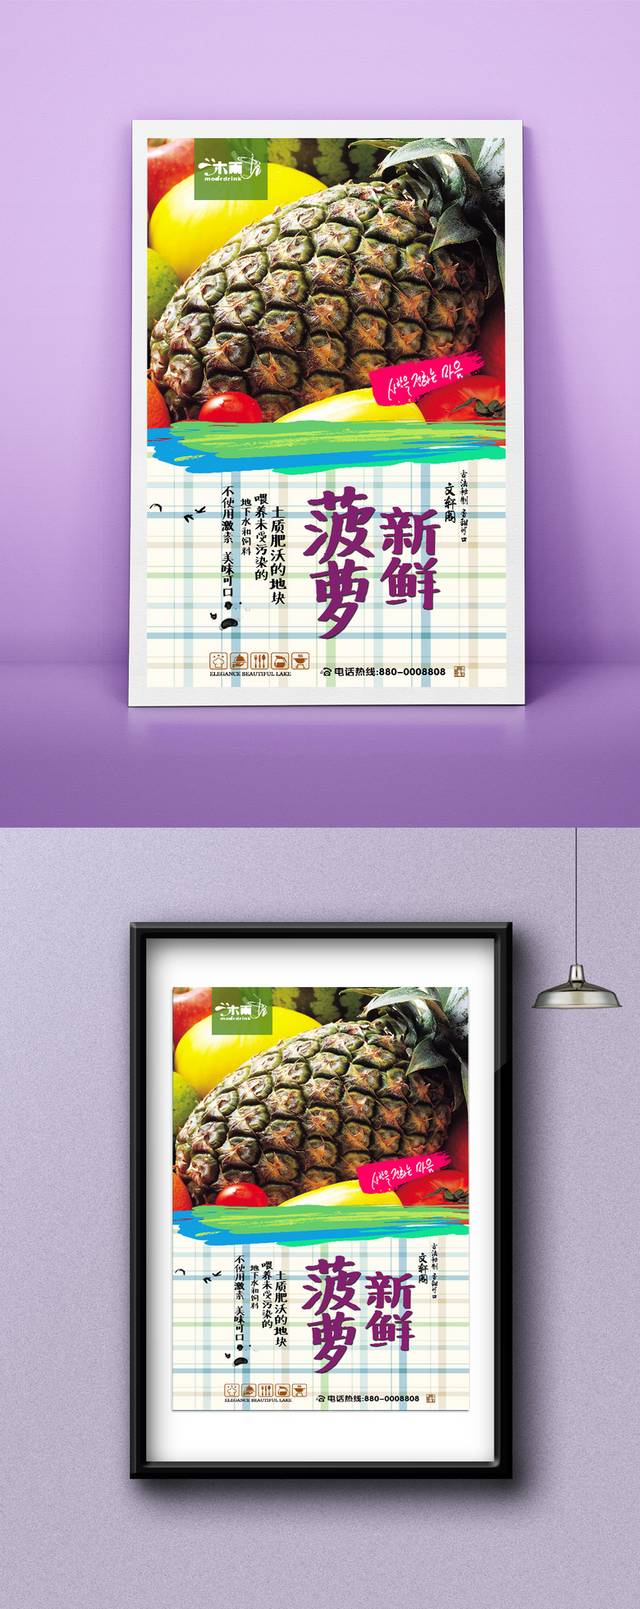 高档菠萝促销海报设计psd